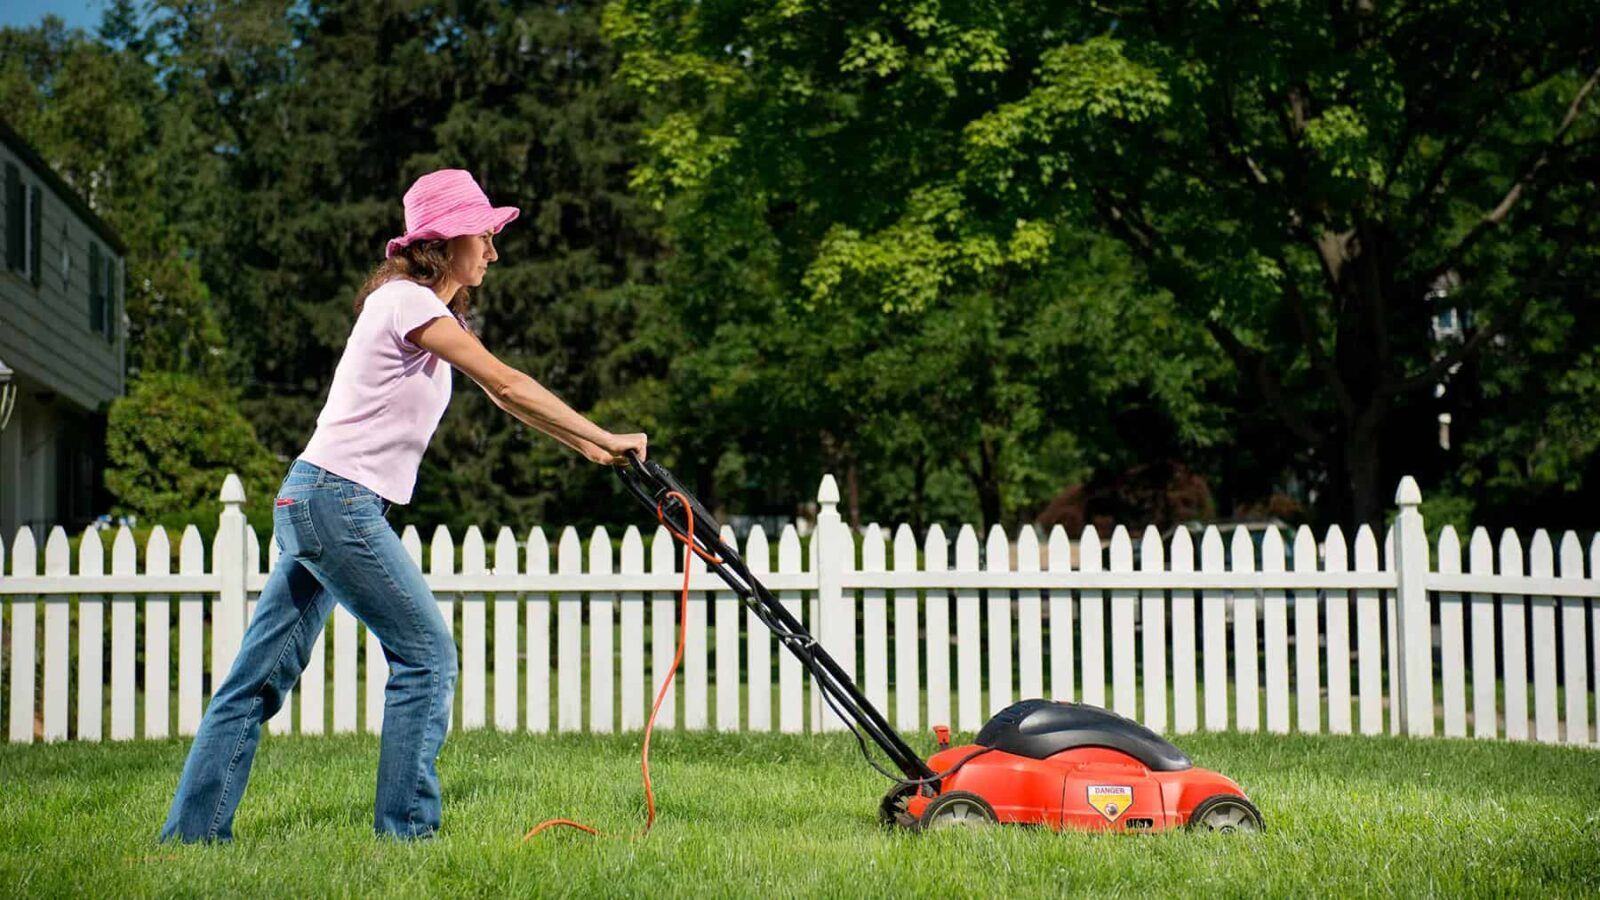 Best-Lawn-Mower-for-Medium-Yard